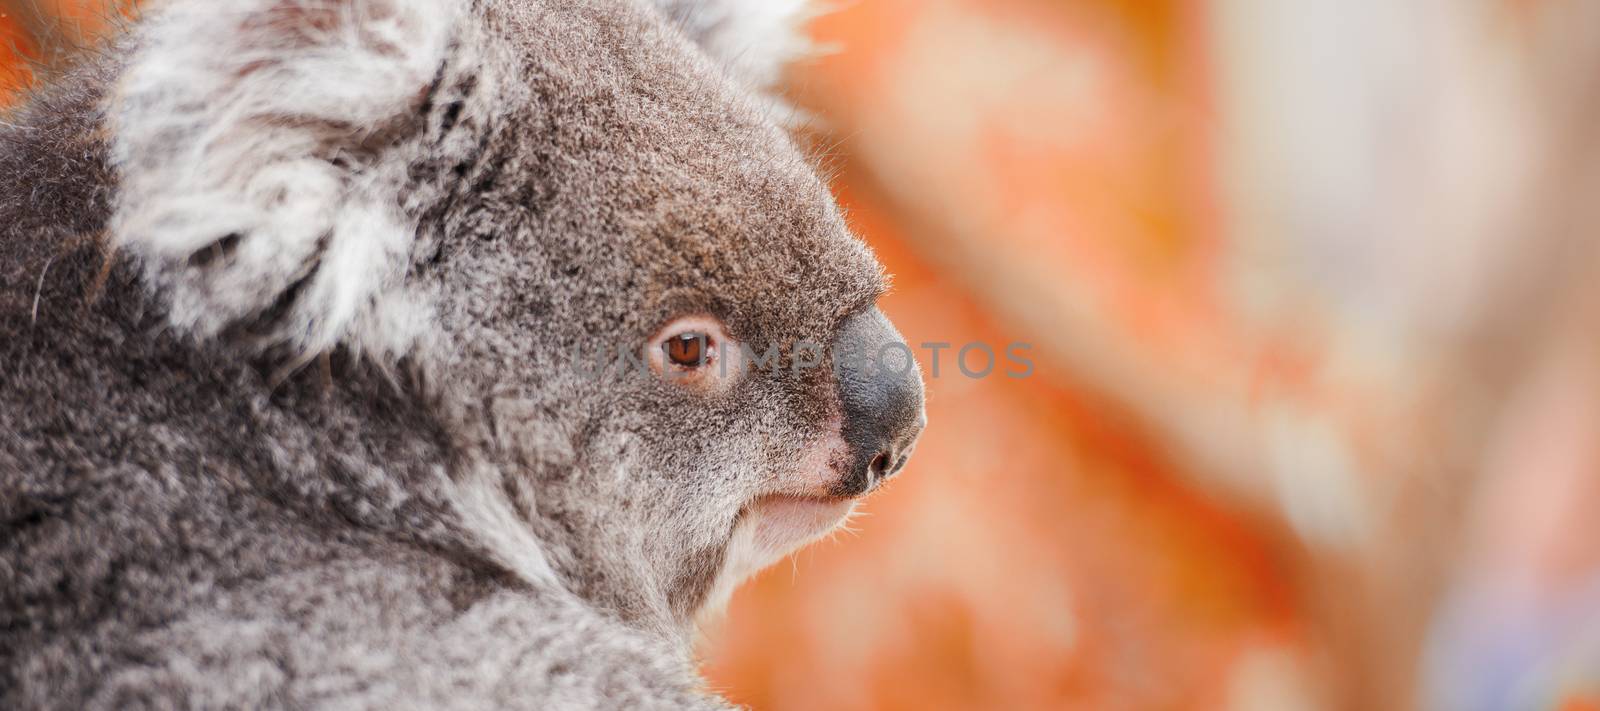 Koala by itself in a tree by artistrobd